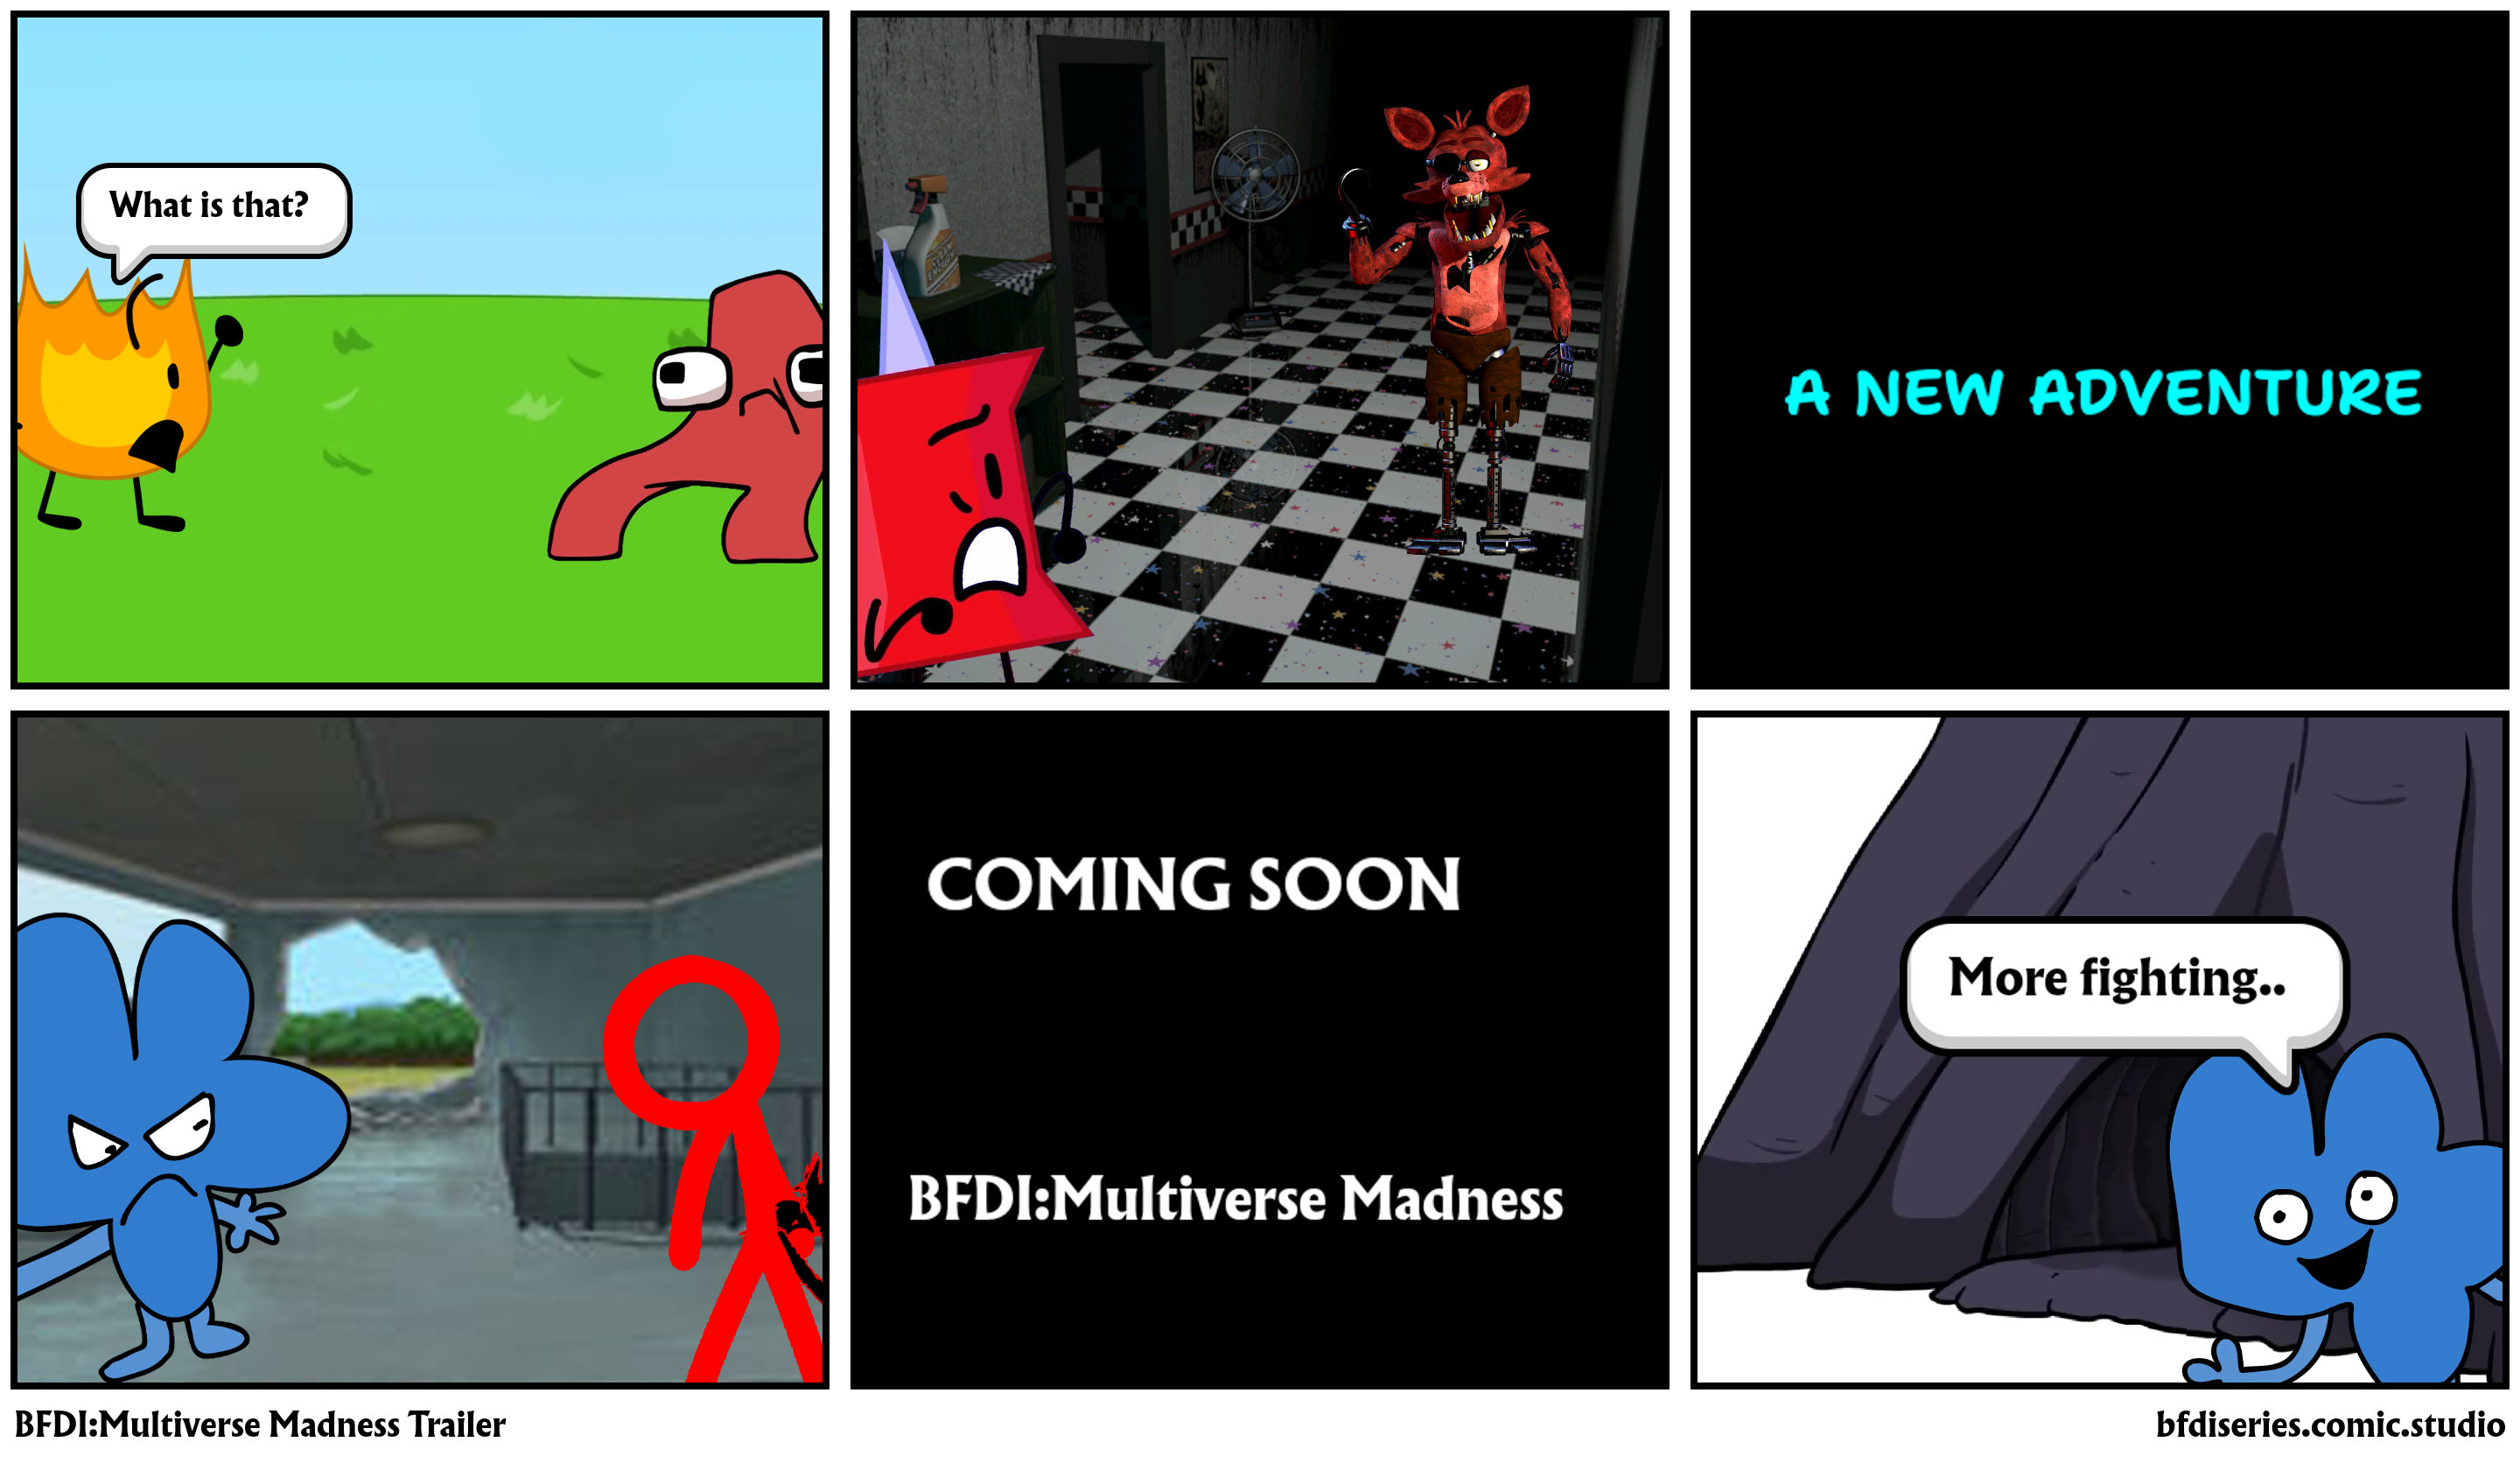 BFDI:Multiverse Madness Trailer